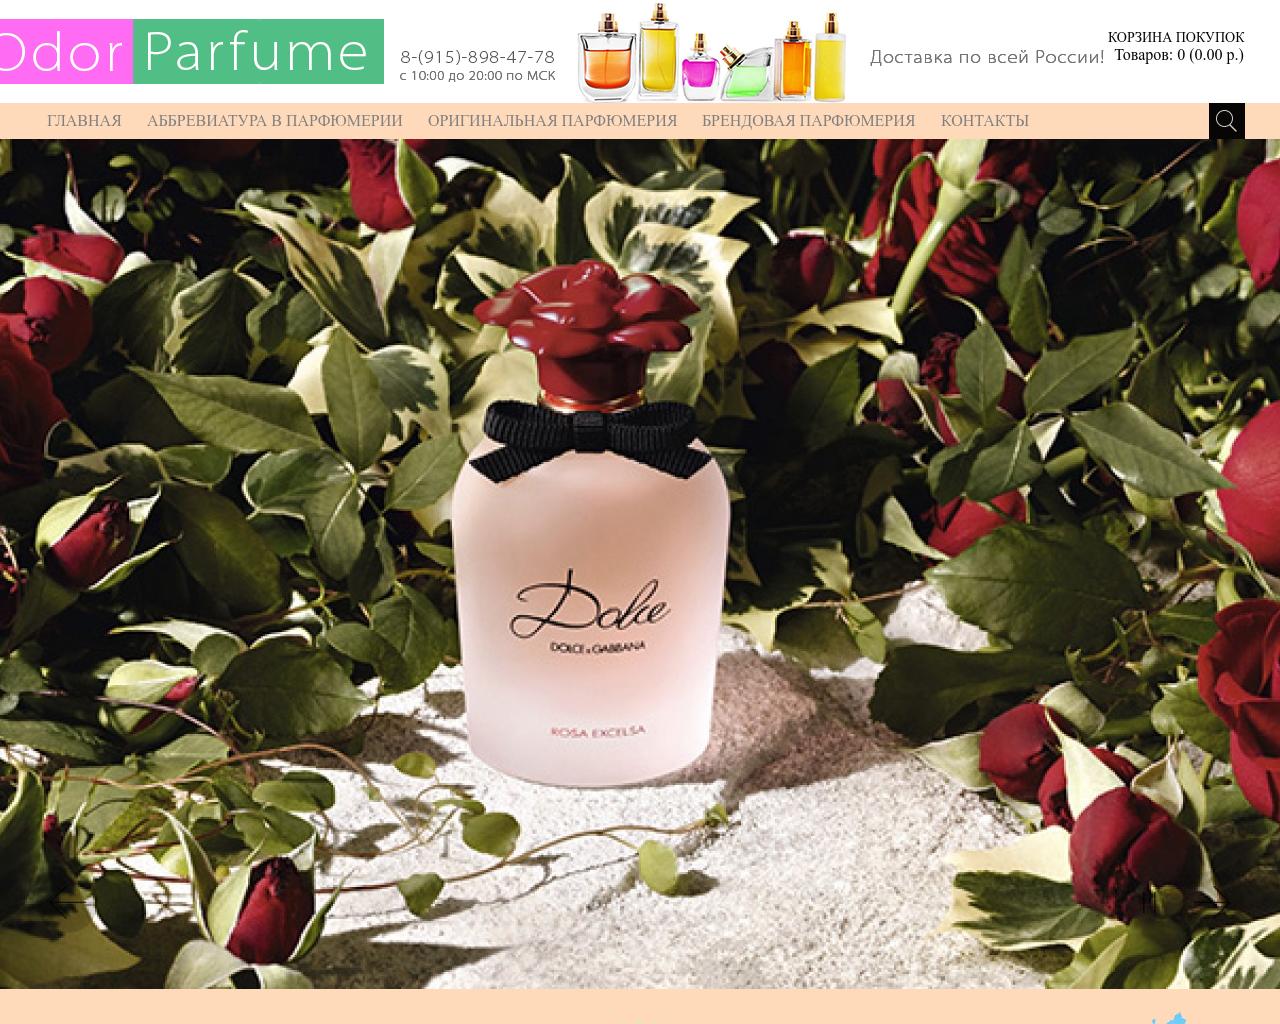 Изображение сайта odor-parfume.ru в разрешении 1280x1024